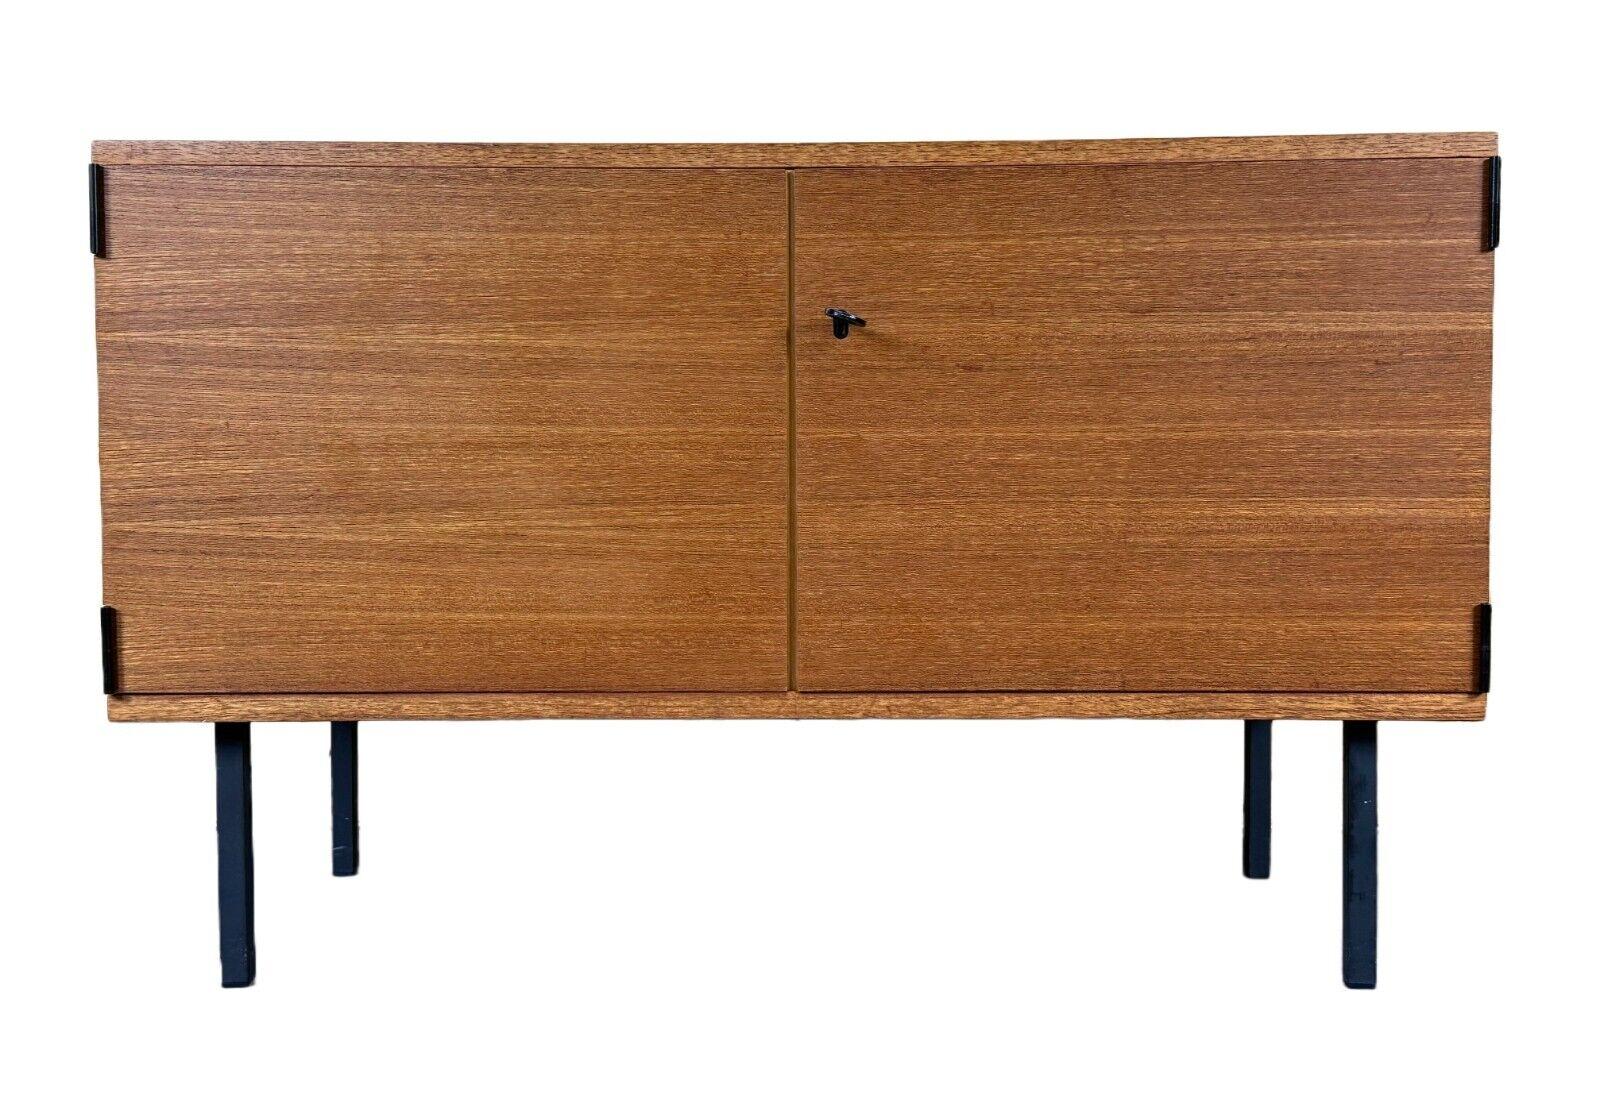 60s 70s teak sideboard cabinet Rego Mobile Danish Modern Design

Object: sideboard

Manufacturer: Rego Mobile Furniture

Condition: good - vintage

Age: around 1960-1970

Dimensions:

Width = 95cm
Depth = 40cm
Height = 60cm

Material: teak,